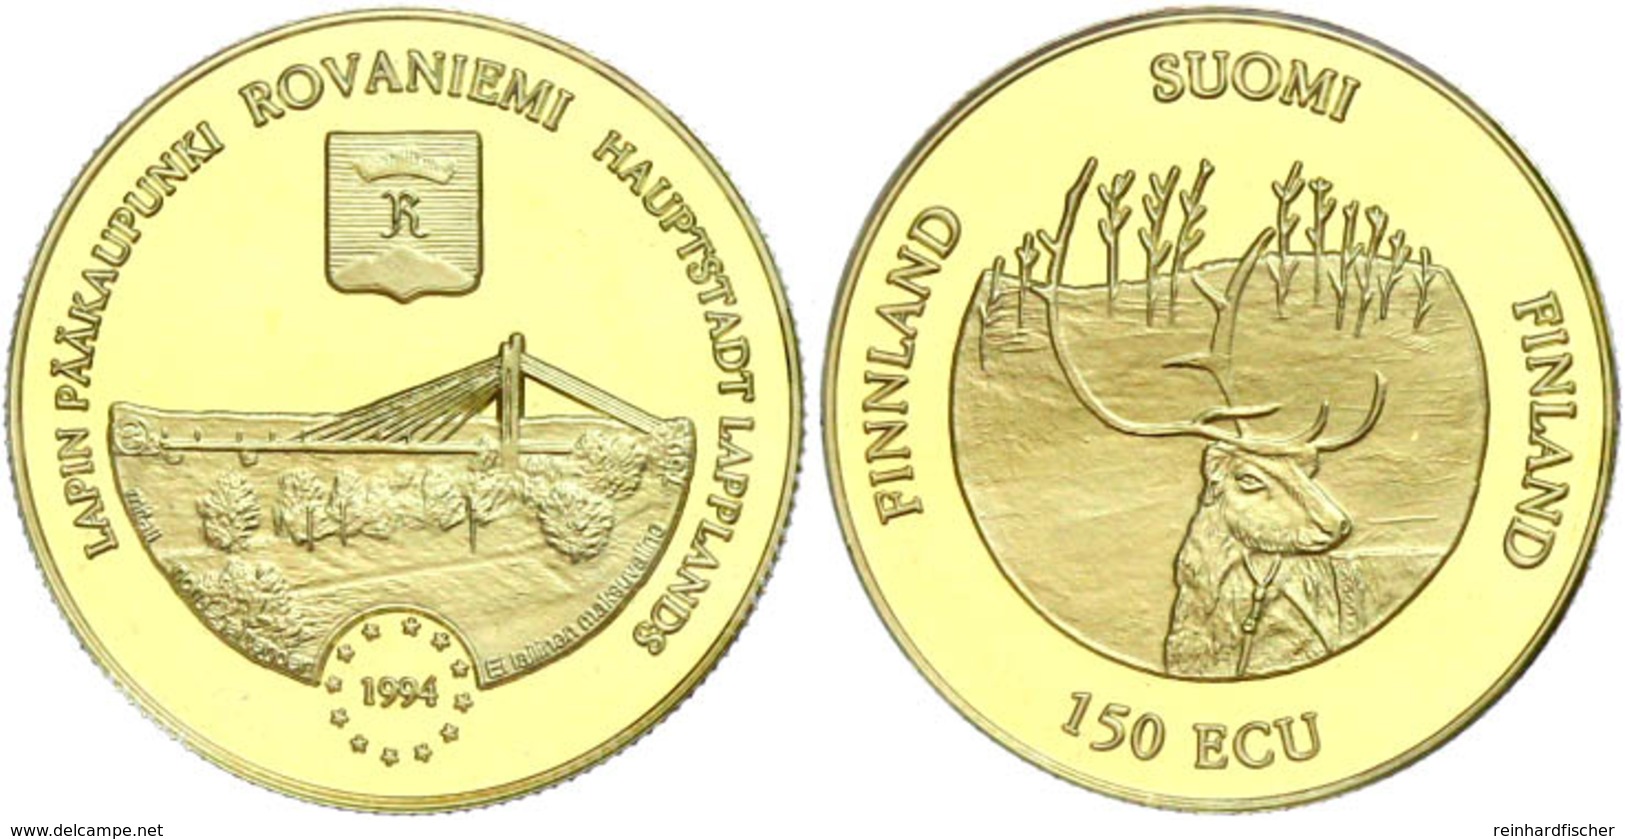 150 ECU, Gold, 1994, Rovaniemi Hauptstadt Lapplands, 6,72 G, 750er Gold, Im Münzrähmchen, PP. Auflage Nur 1000 Exemplare - Finland